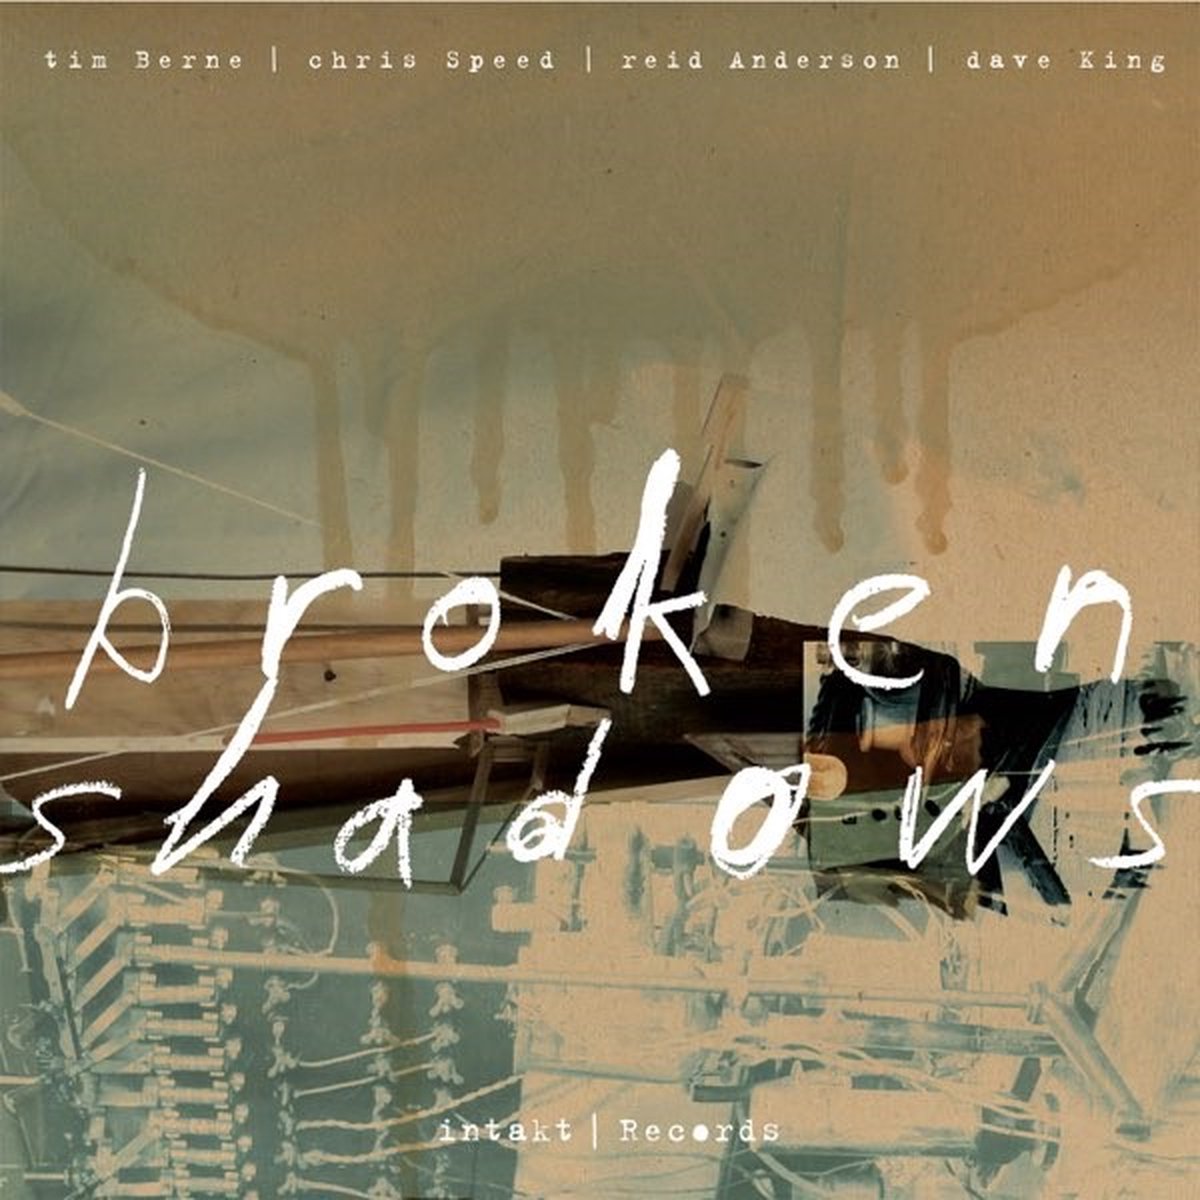 Tim Berne, Chris Speed, Reid Anderson, Dave King Broken Shadows (CD),  Chris Speed |...